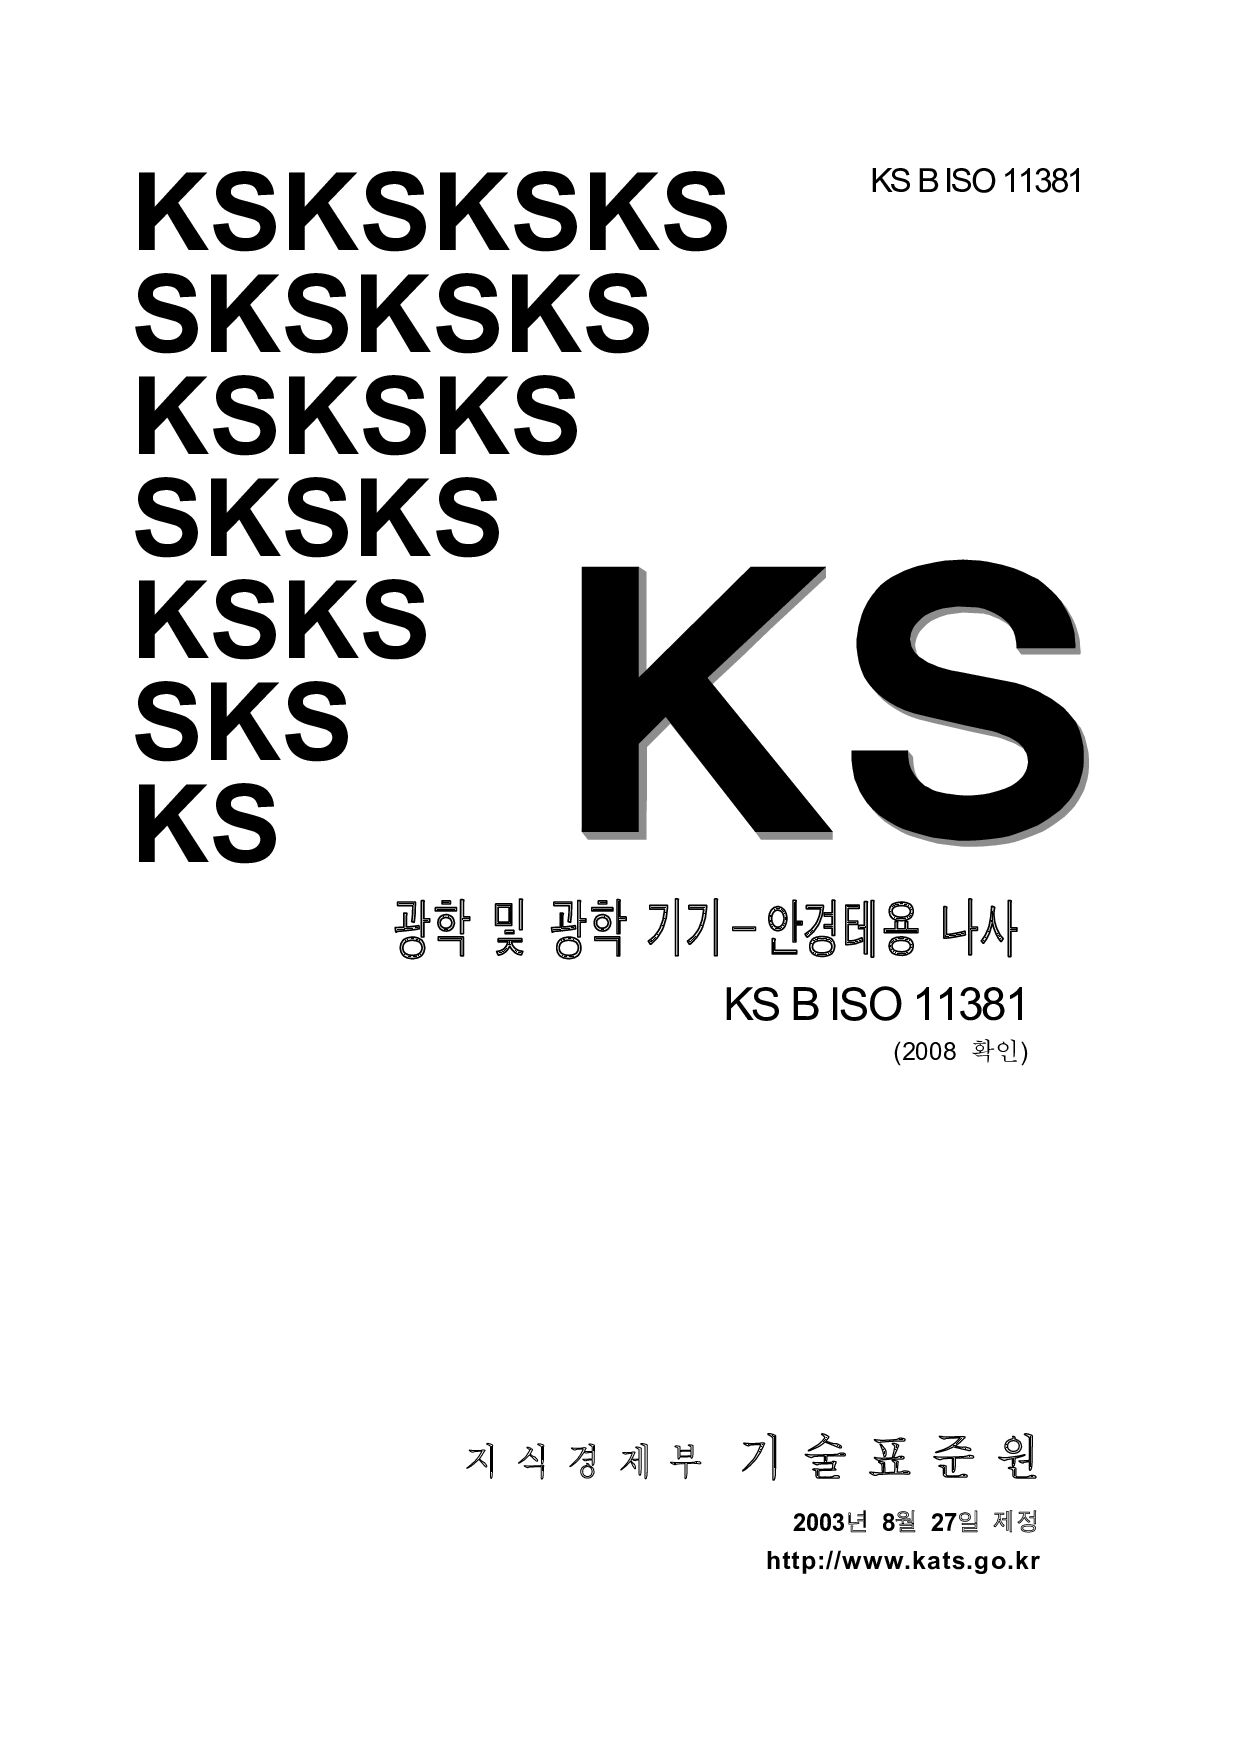 KS B ISO 11381:2003